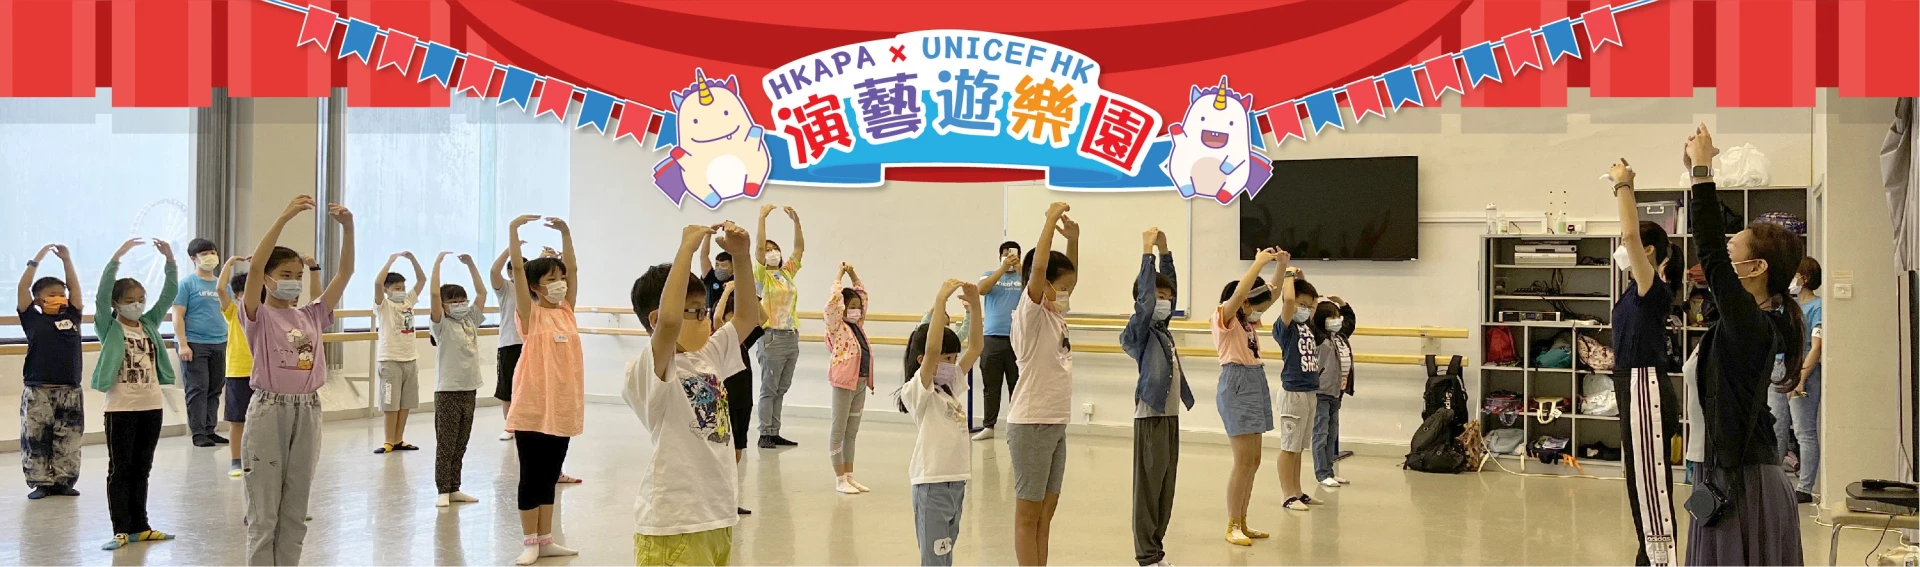 演艺游乐园 HKAPA x UNICEF HK